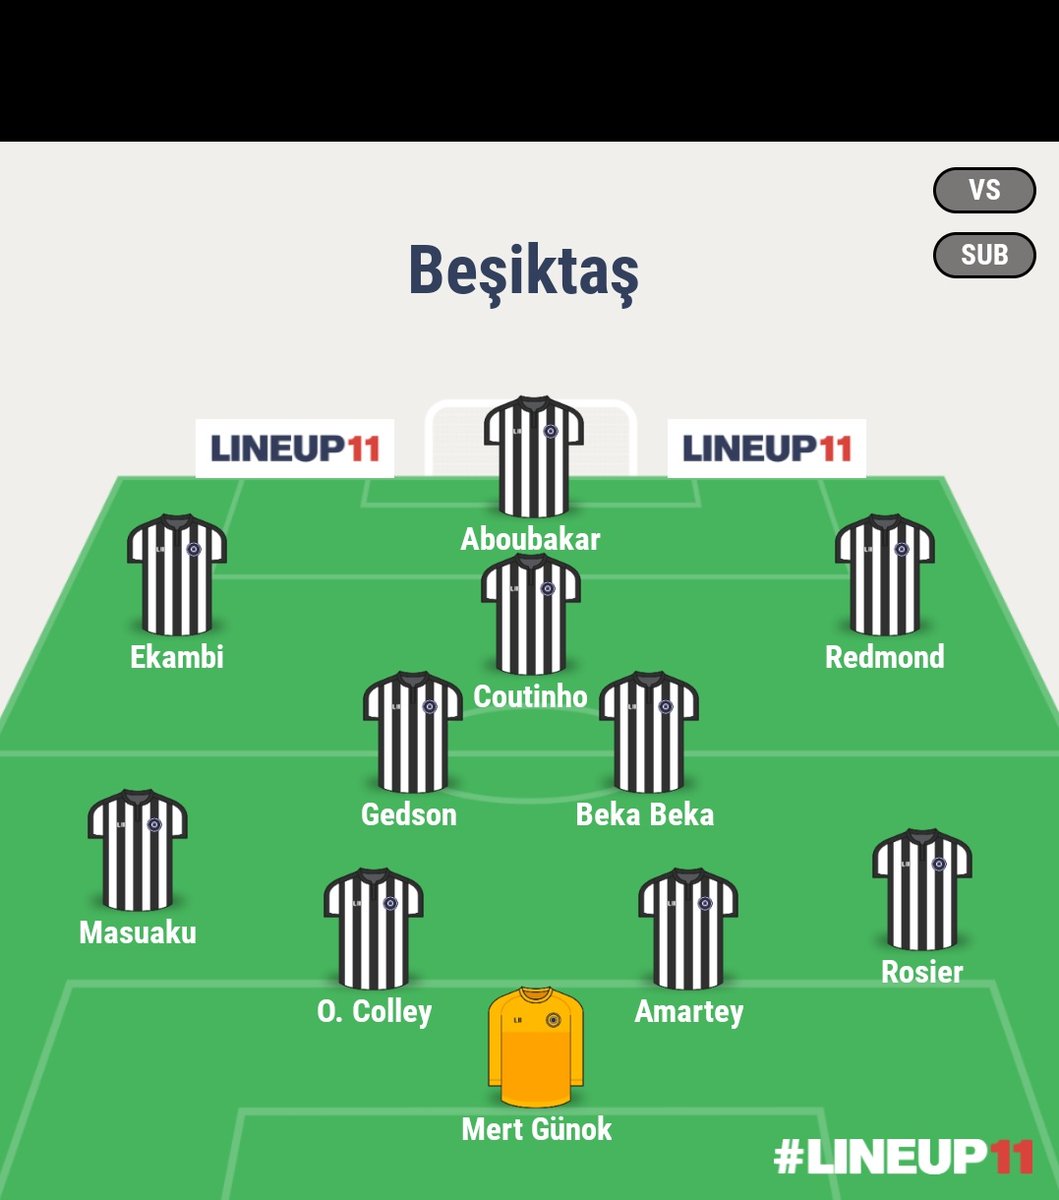 Konferans ligi finalinde Beşiktaş ilk 11🦅
@Besiktas
#TRANSFER